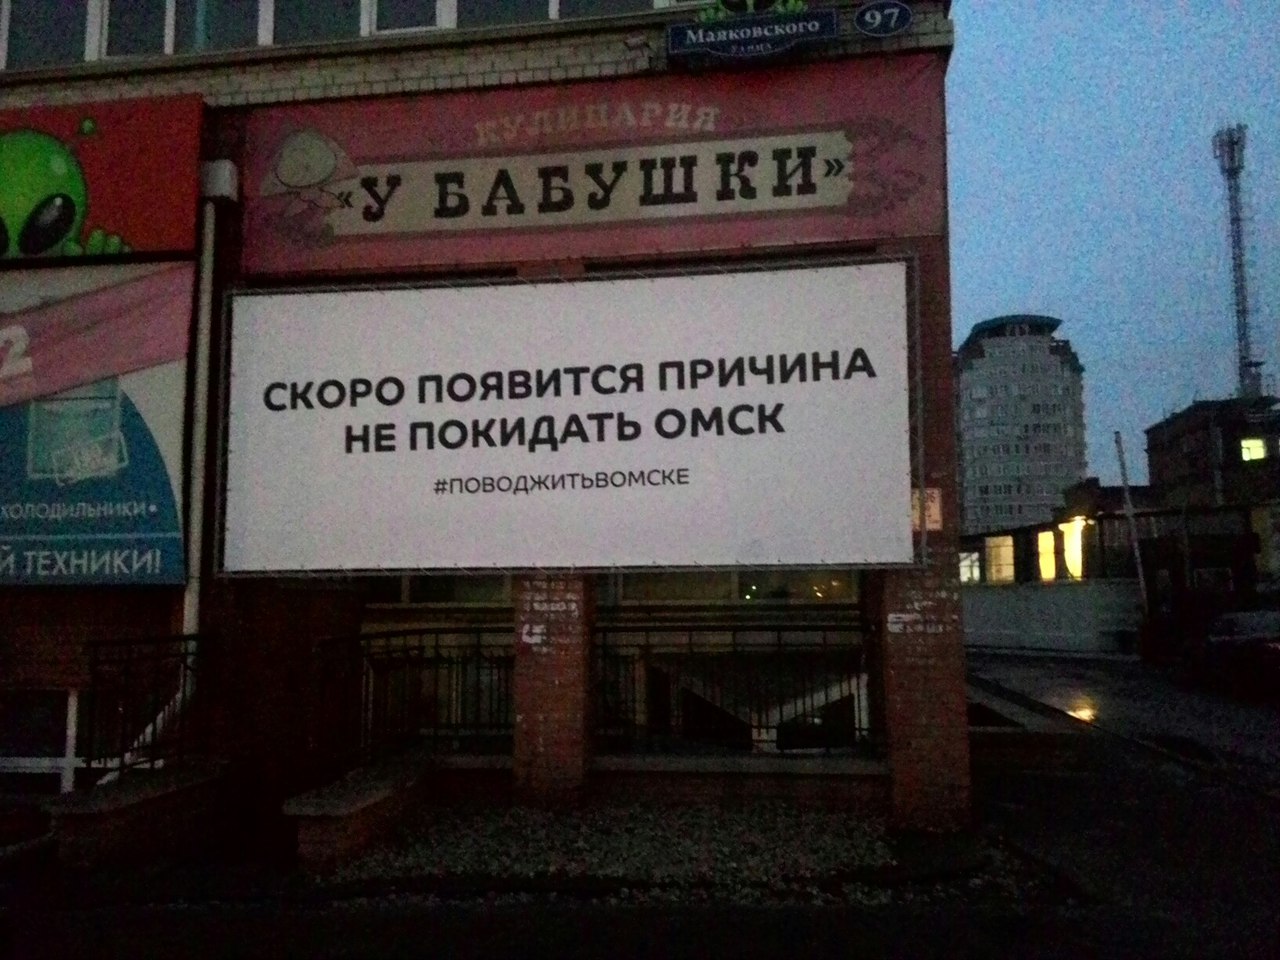 Омичи обсуждают загадочный плакат с надписью «повод жить в Омске»